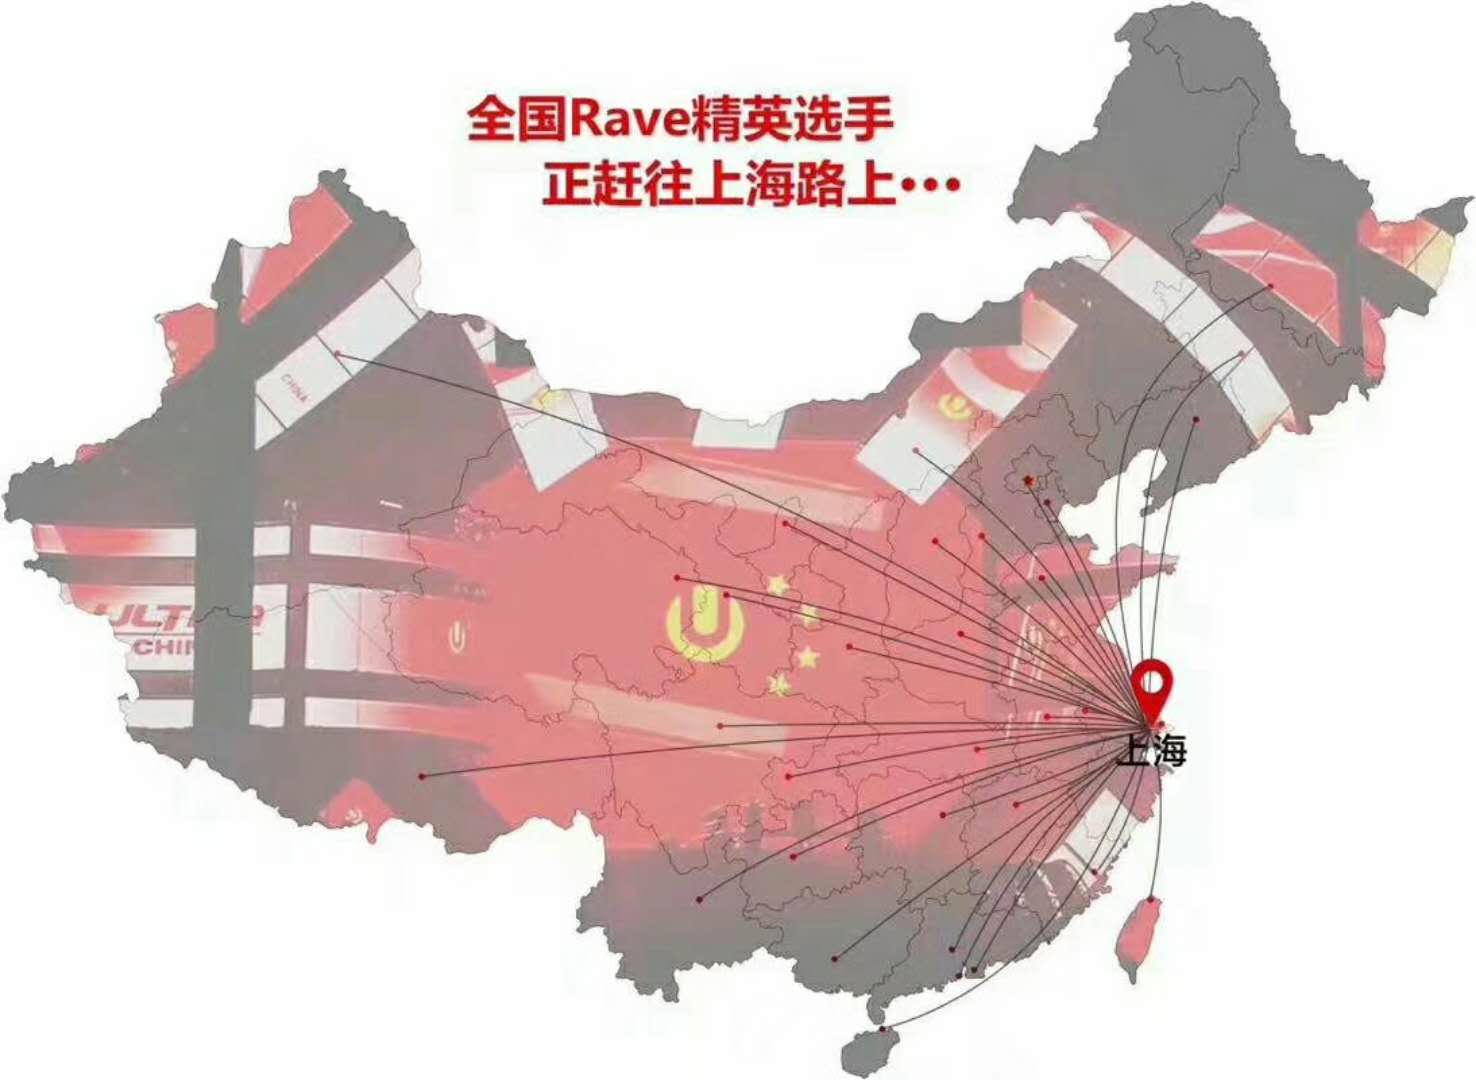 全国的raver赶往上海